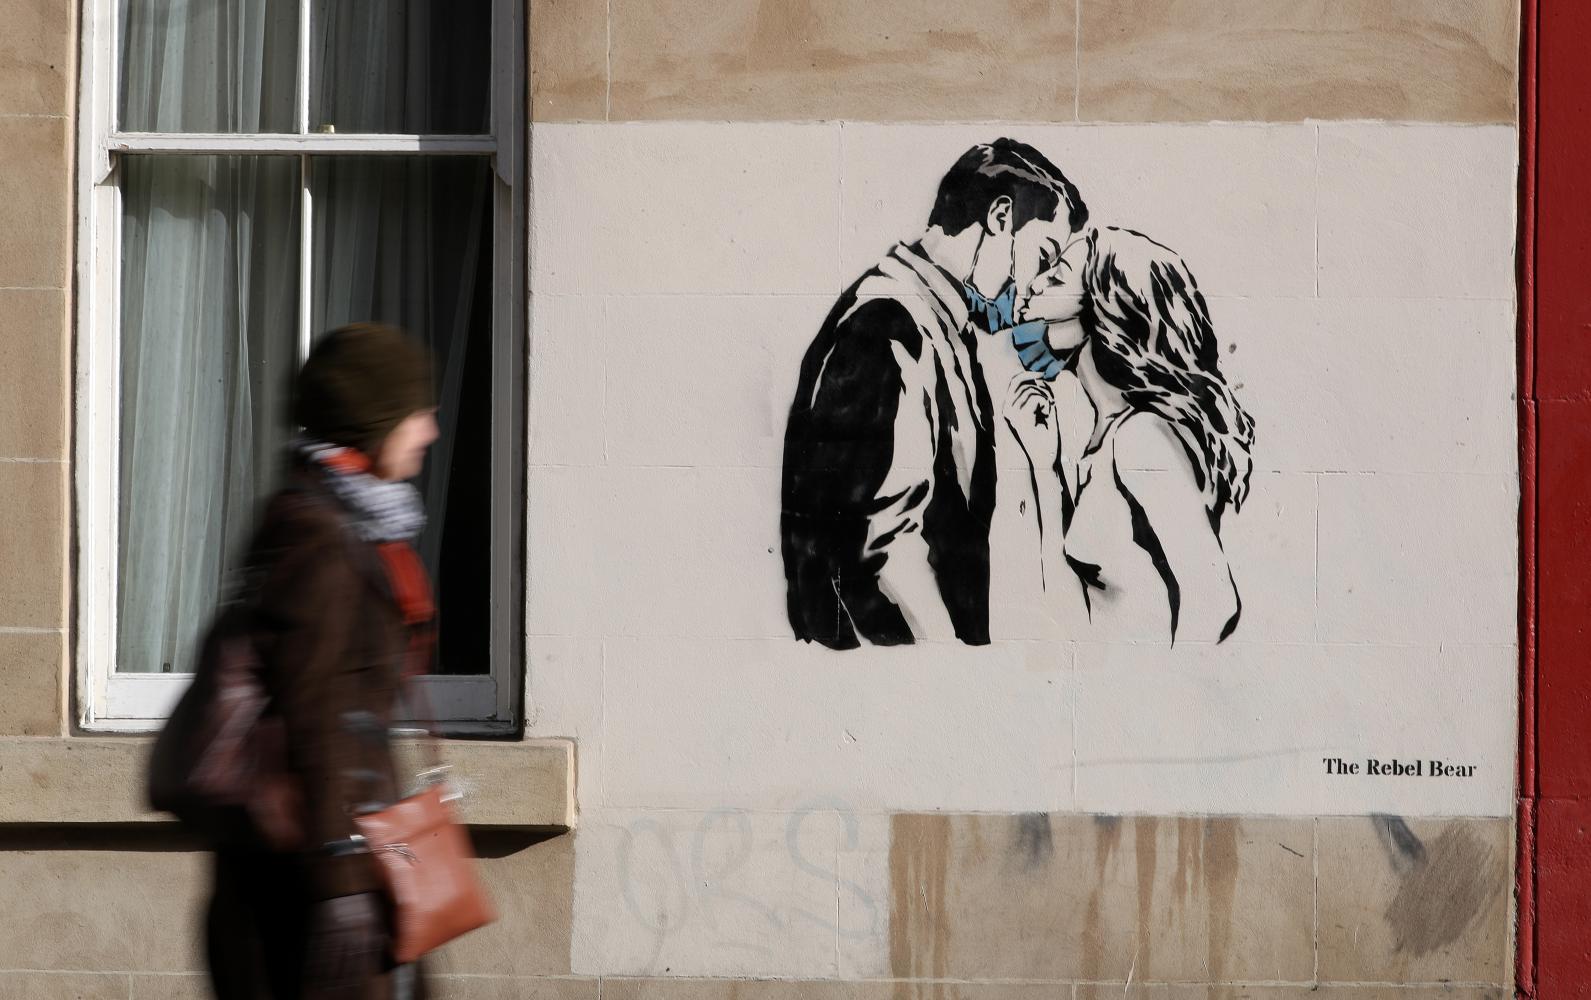 Liebe und Kunst allein reichen nicht zum Leben: Corona-Graffito von Rebel Bear in Glasgow